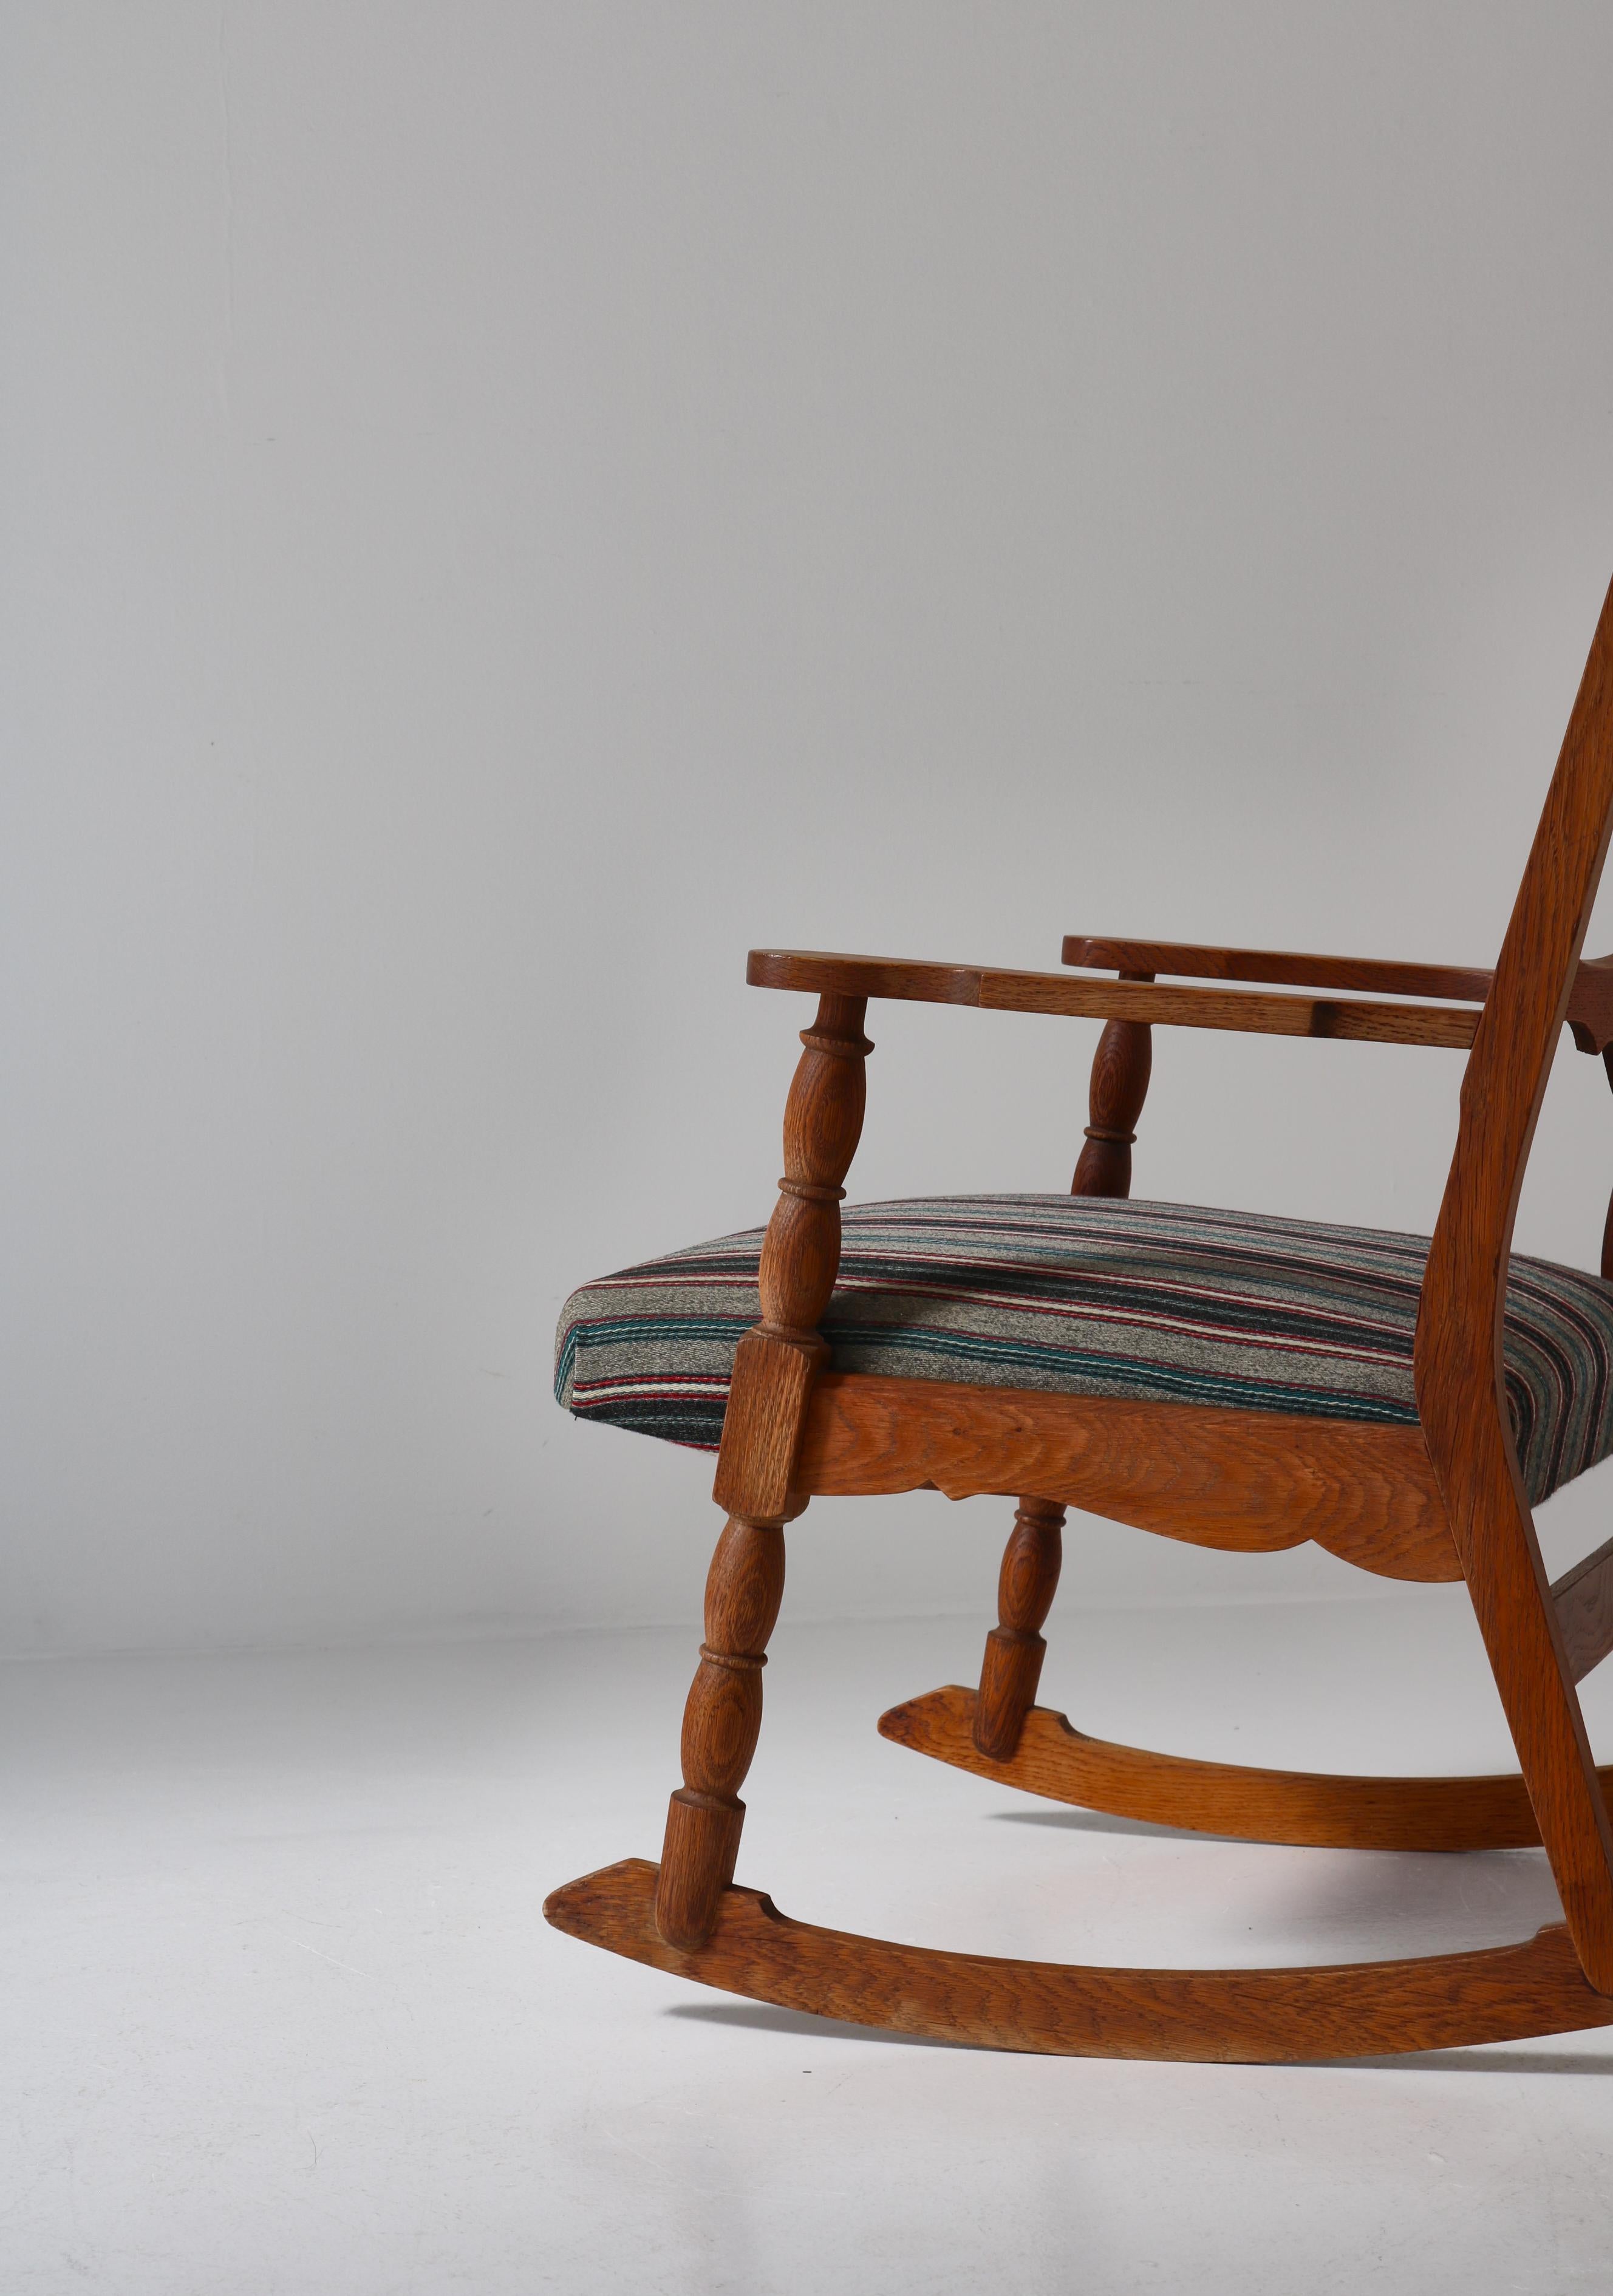 1950s Rocking Chair in Oak & Wool Fabric by Henry Kjærnulff, Danish Modern For Sale 2